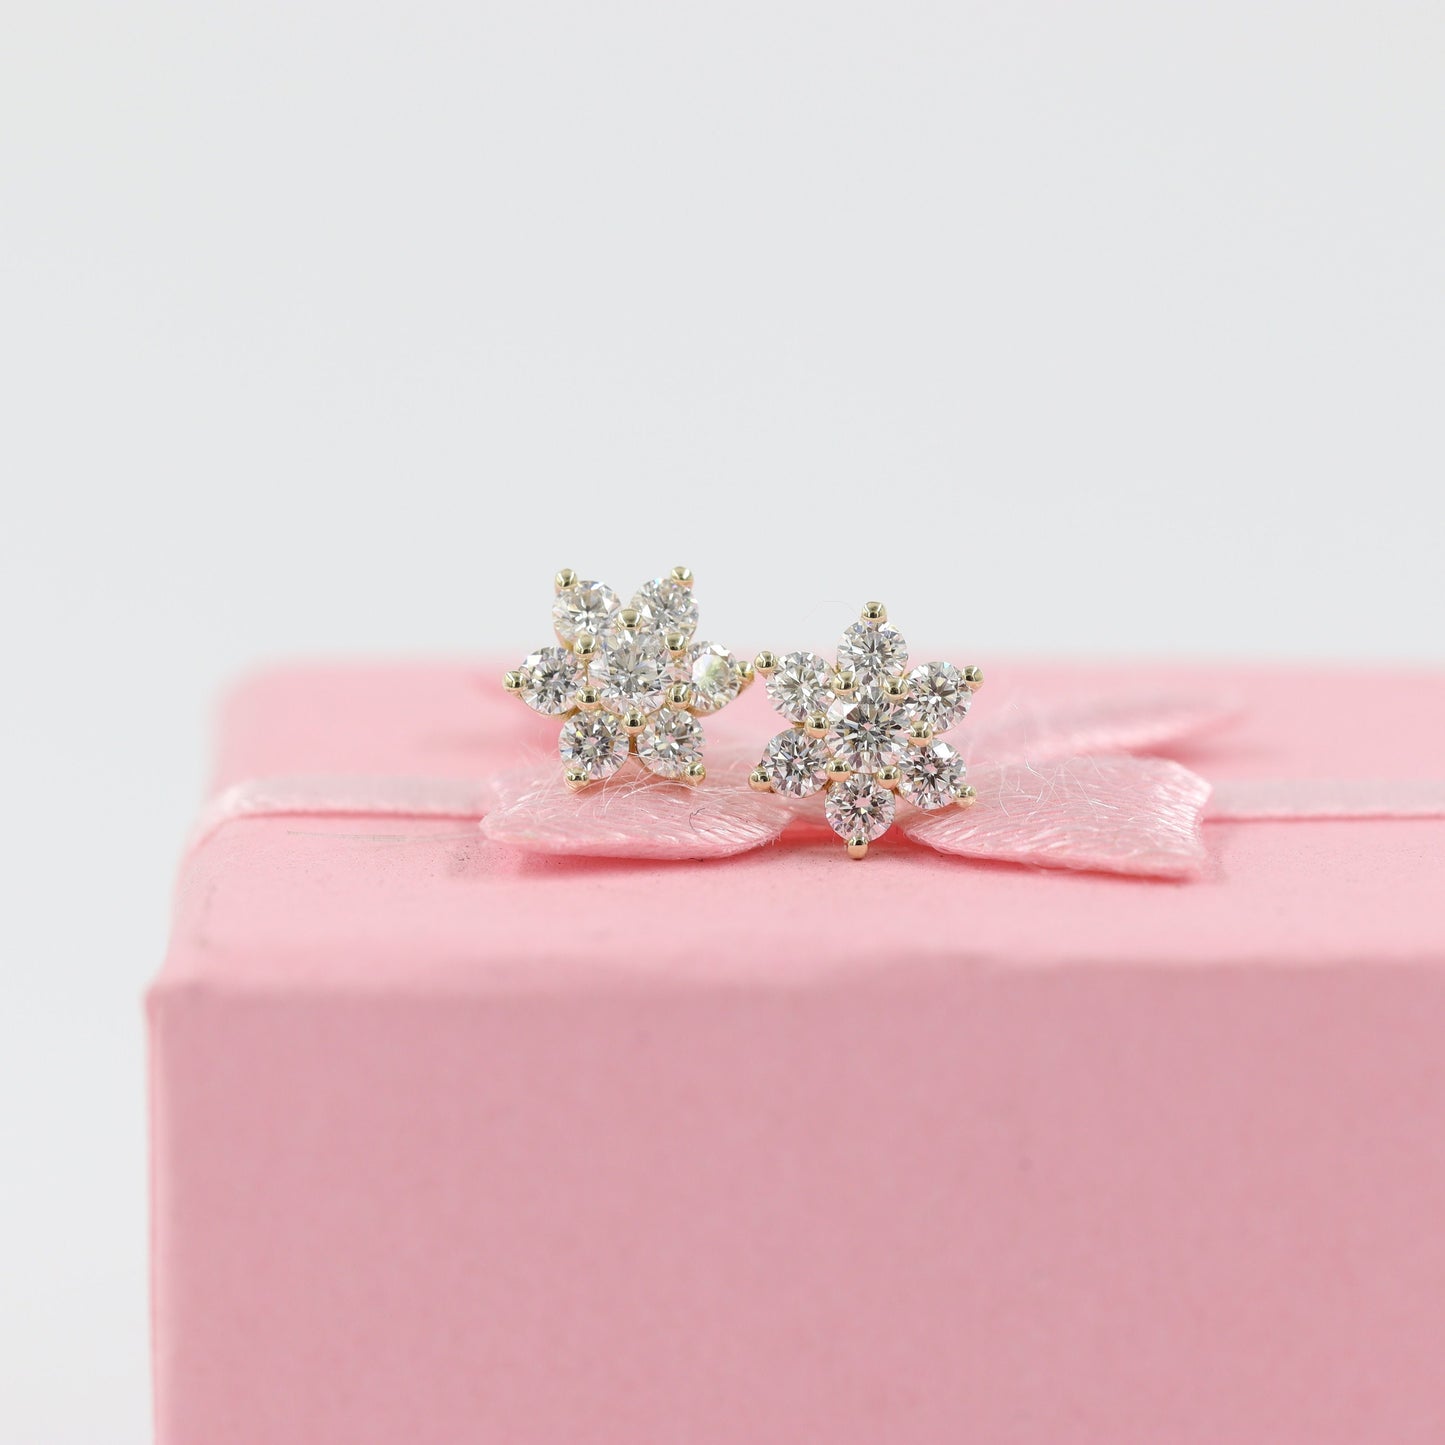 Diamond Stud Earring /14K gold Flower Stud Earring/ Anniversary gift /100% Natural  Round Diamond Earring /Gift for her  Flower Stud Earring